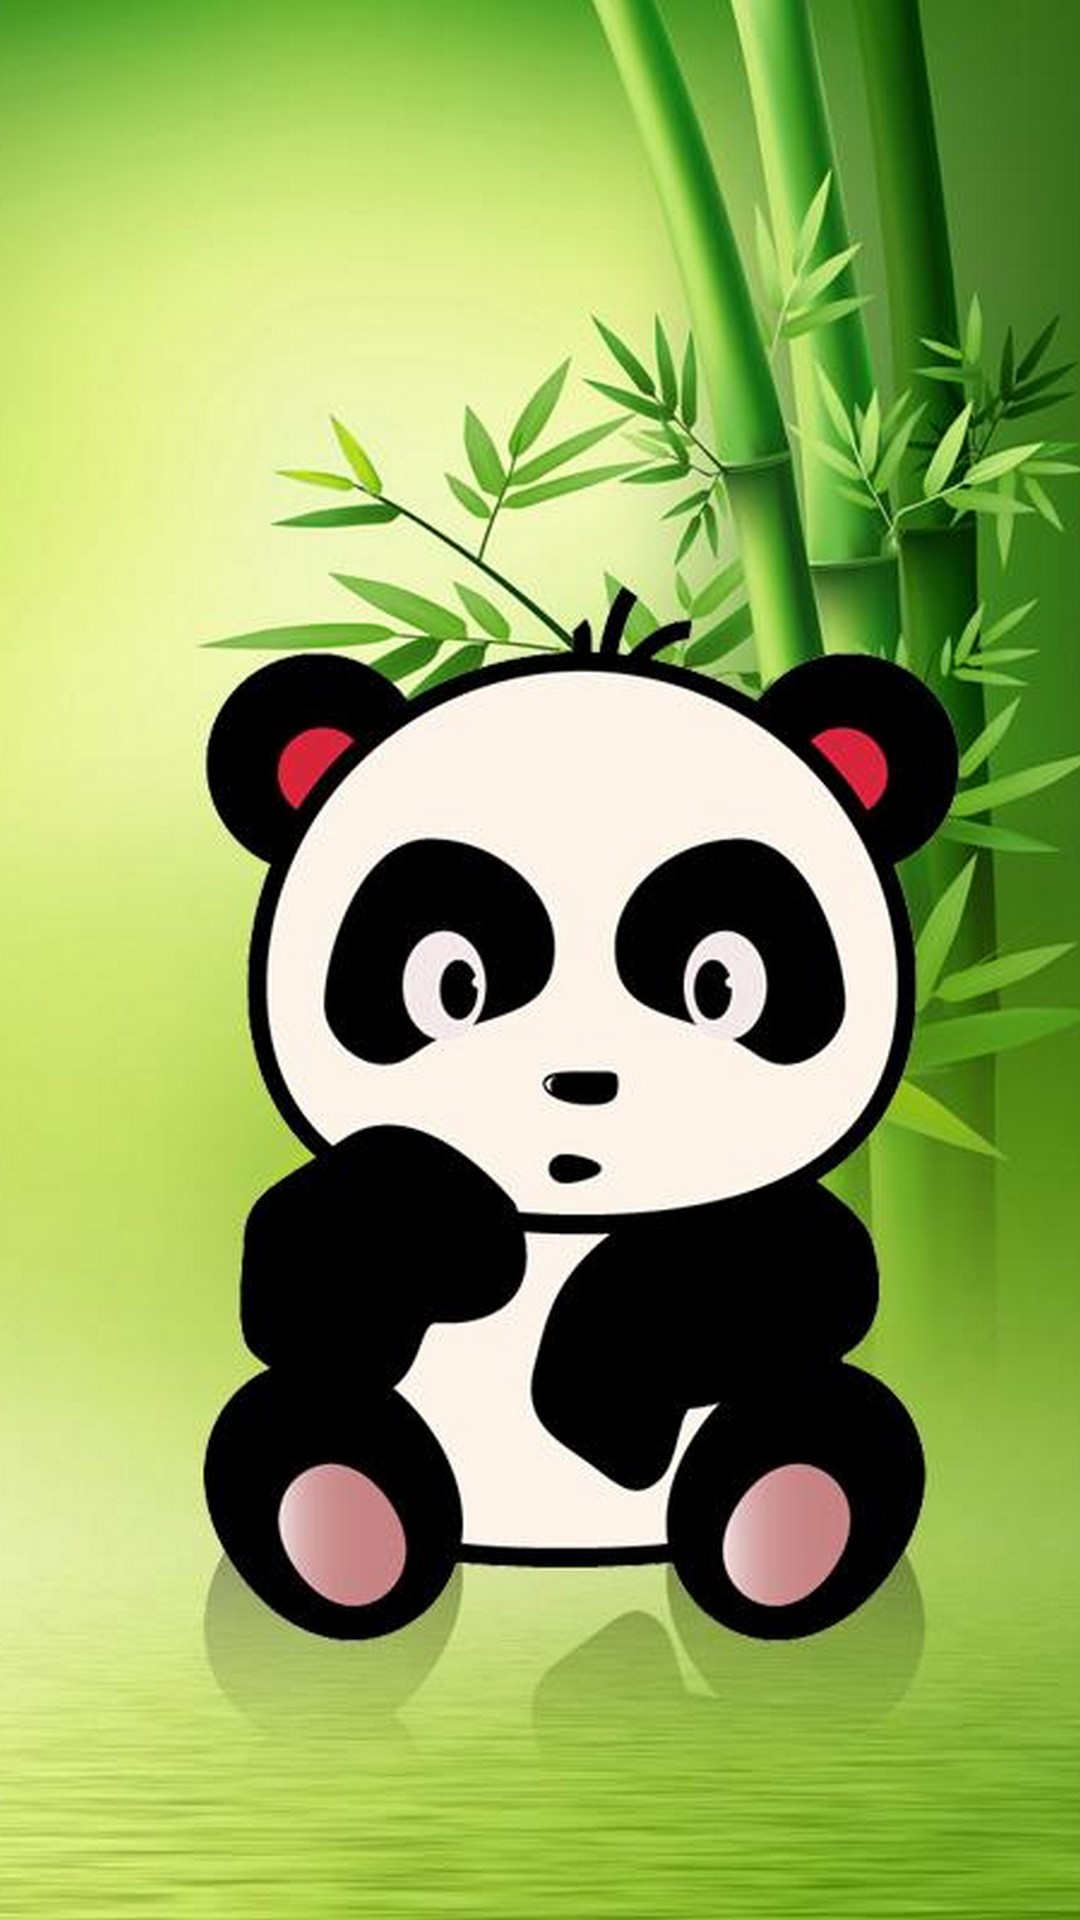 iPhone X Cute Panda Wallpaper Cute Wallpaper